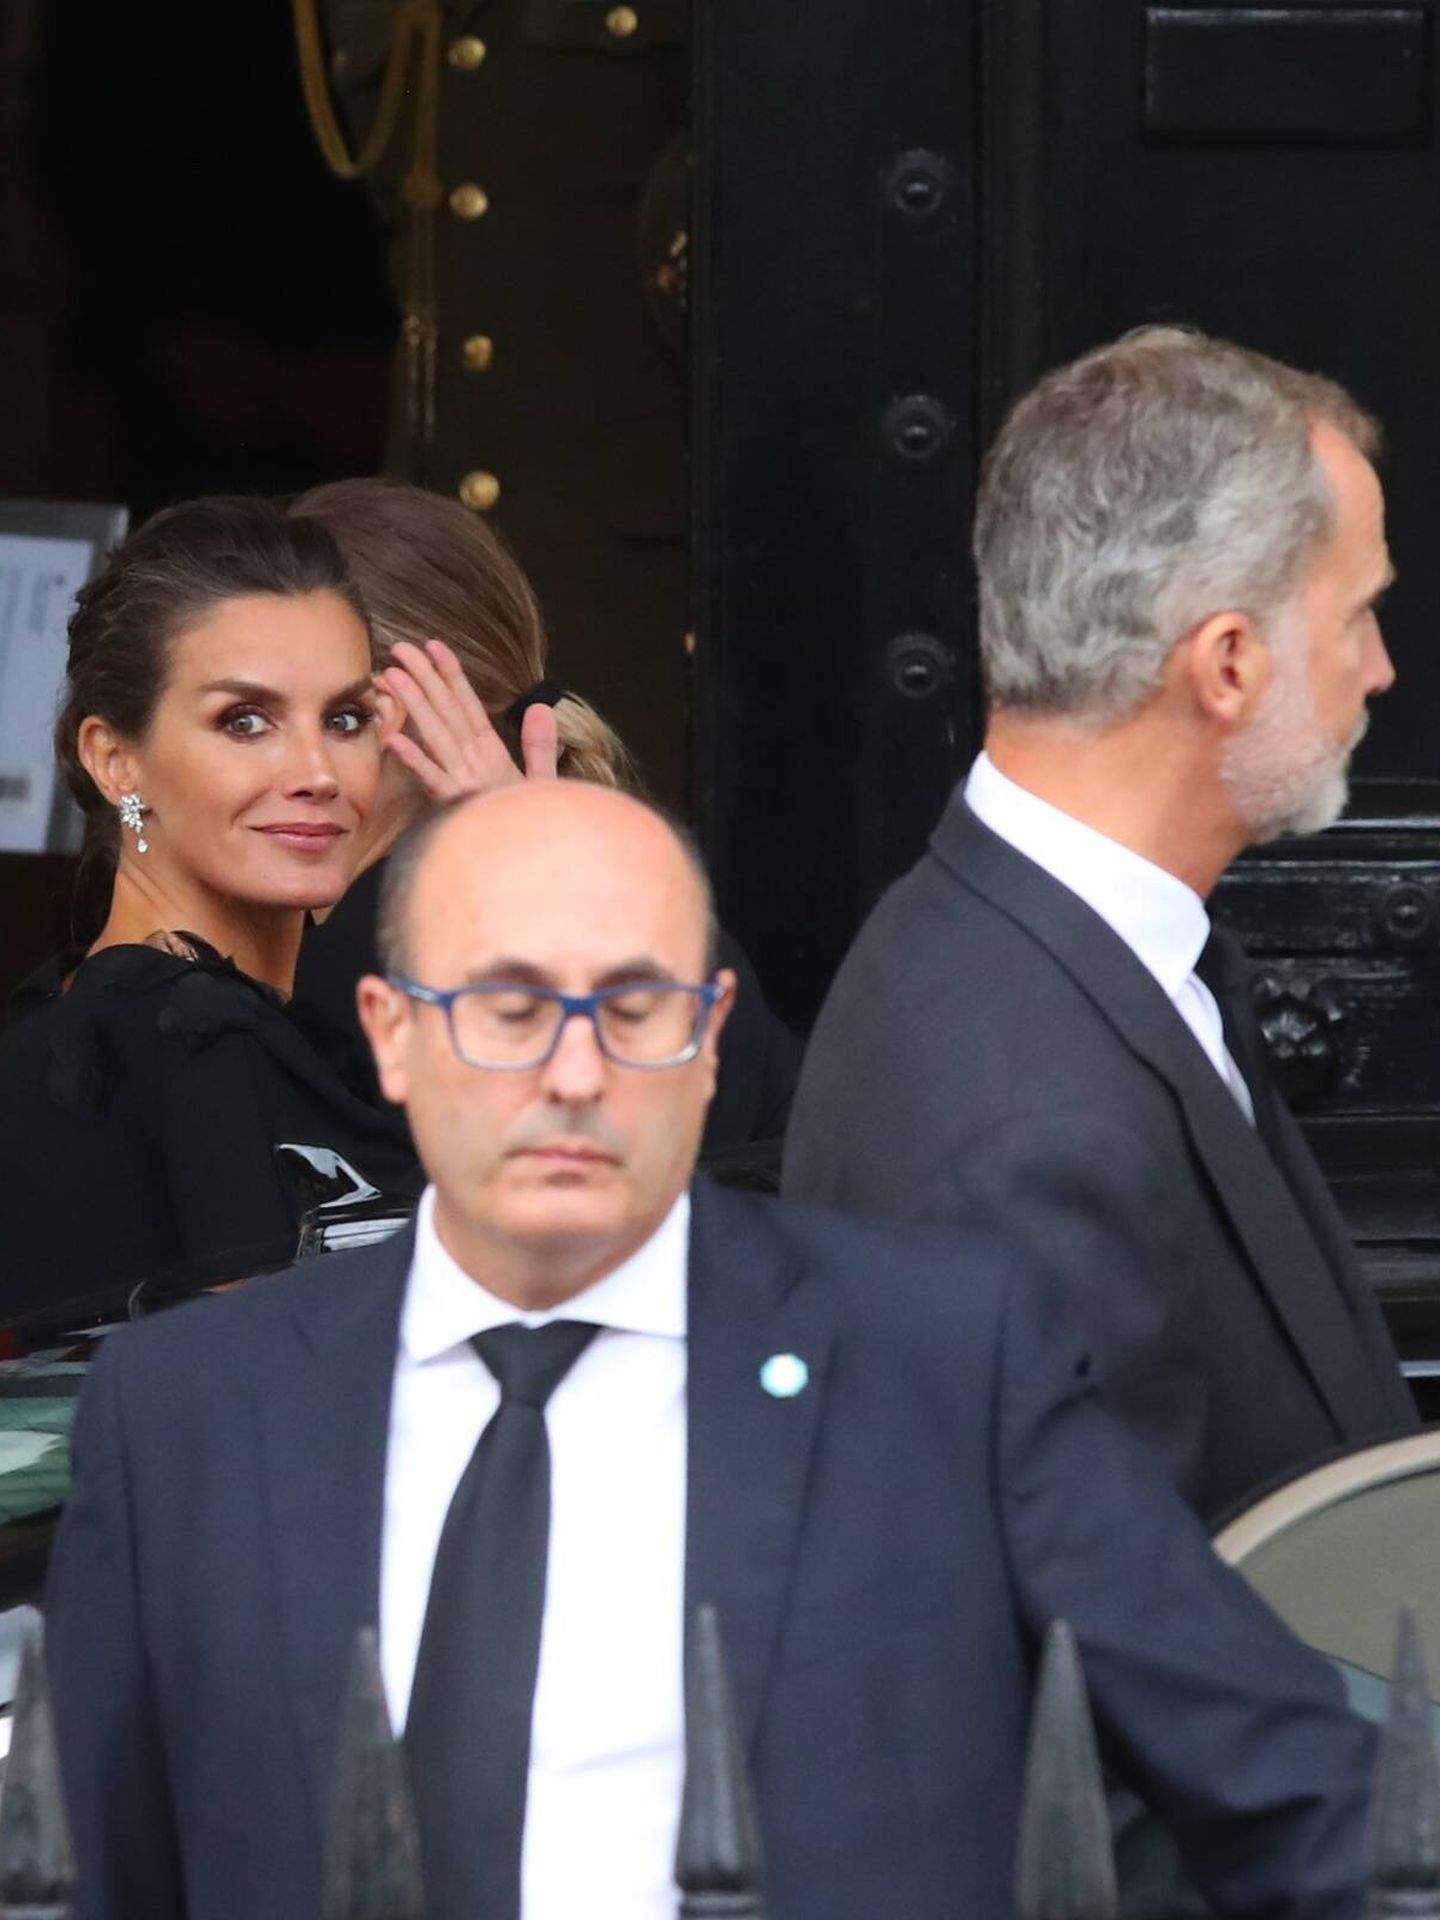 Felipe VI y Letizia, abandonando la embajada española rumbo a Westminster Hall. (Gtres)